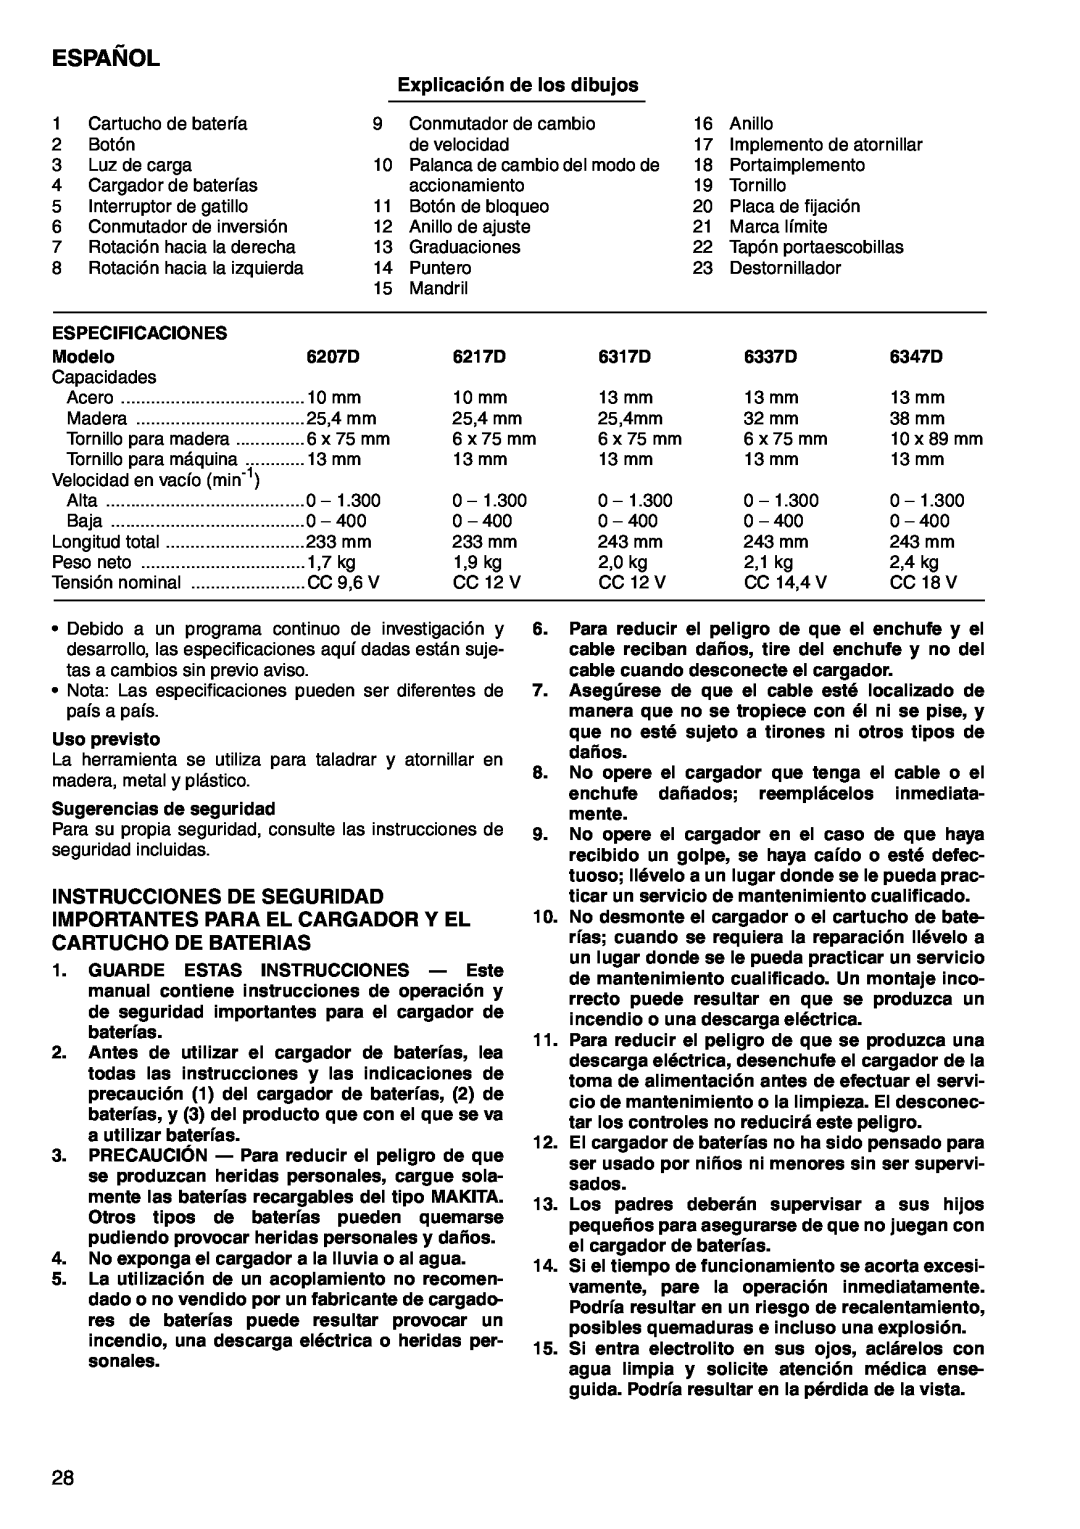 Makita 6217D, 6347D, 6337D, 6317D, 6207D instruction manual Español, Explicación de los dibujos 